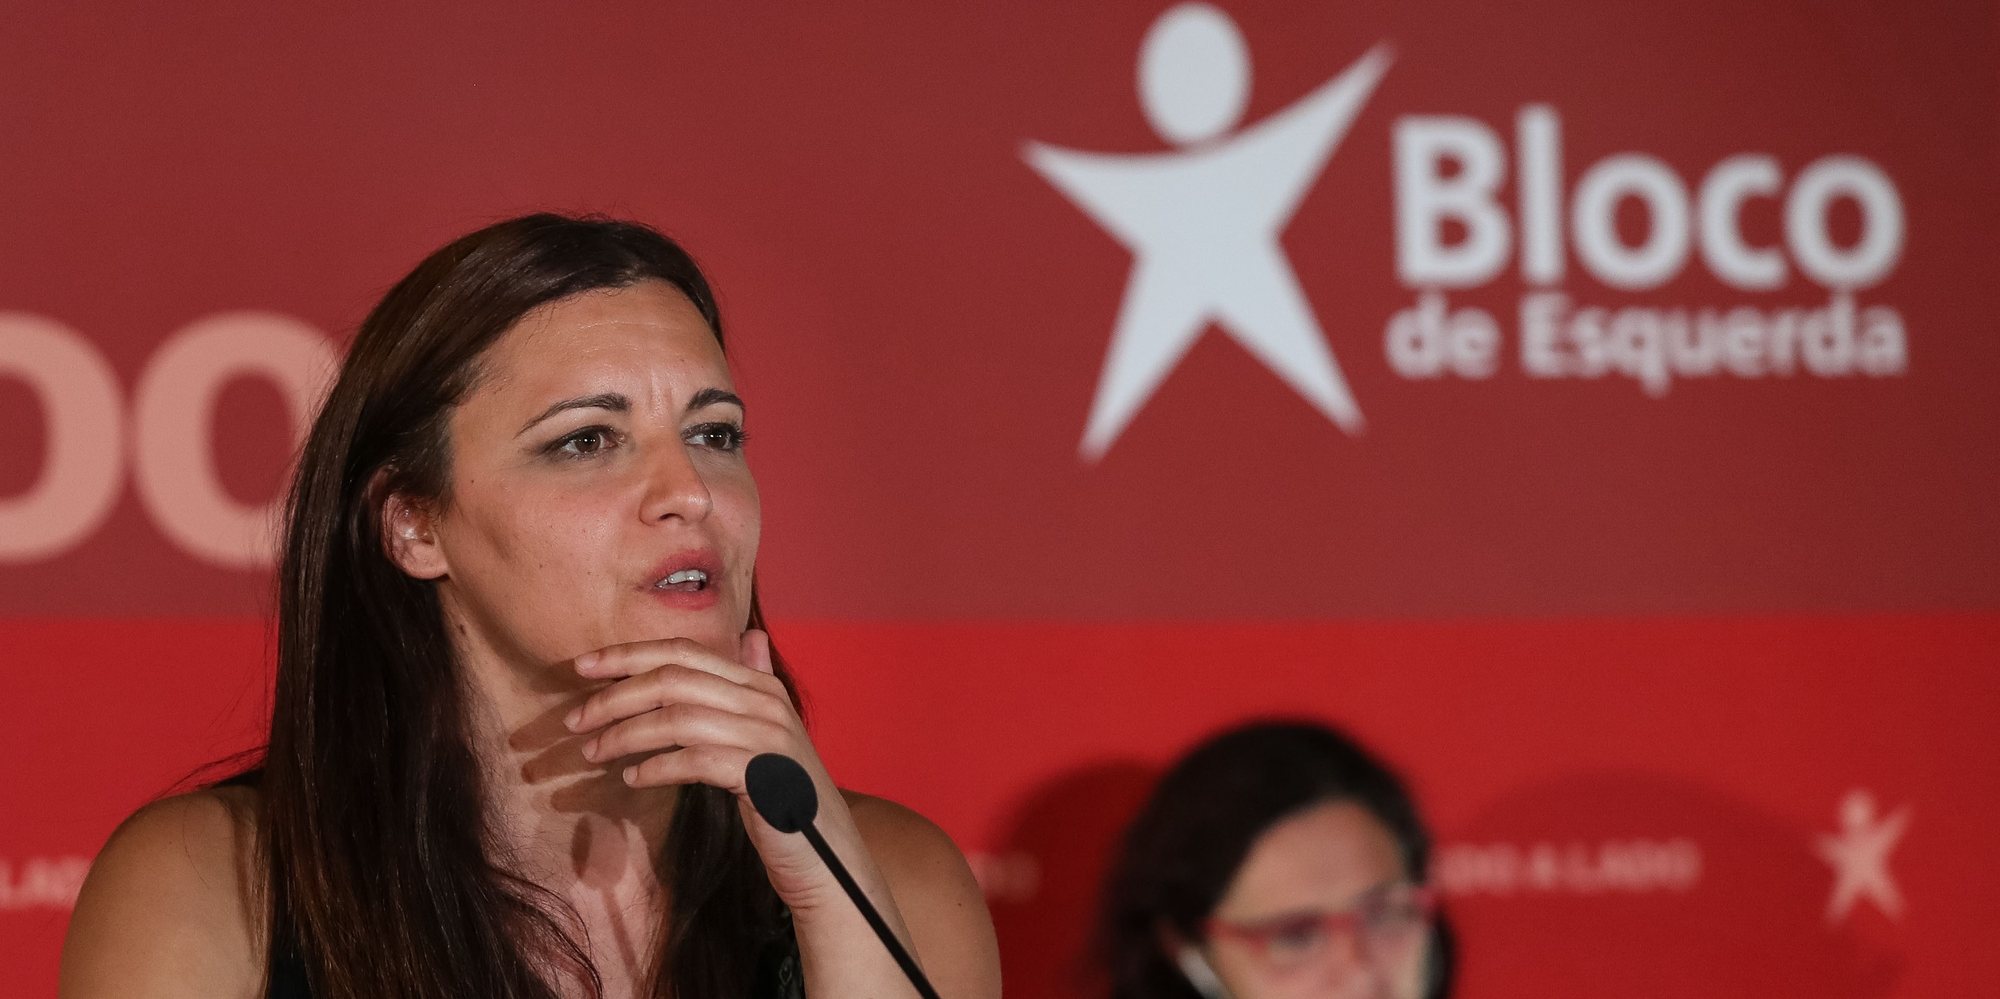 A cabeça de lista do Bloco de Esquerda (BE), Marisa Matias, intervém durante o jantar/comício de encerramento no âmbito da campanha para as Eleições Europeias 2019, em Coimbra, 24 de maio de 2019. PAULO NOVAIS / LUSA